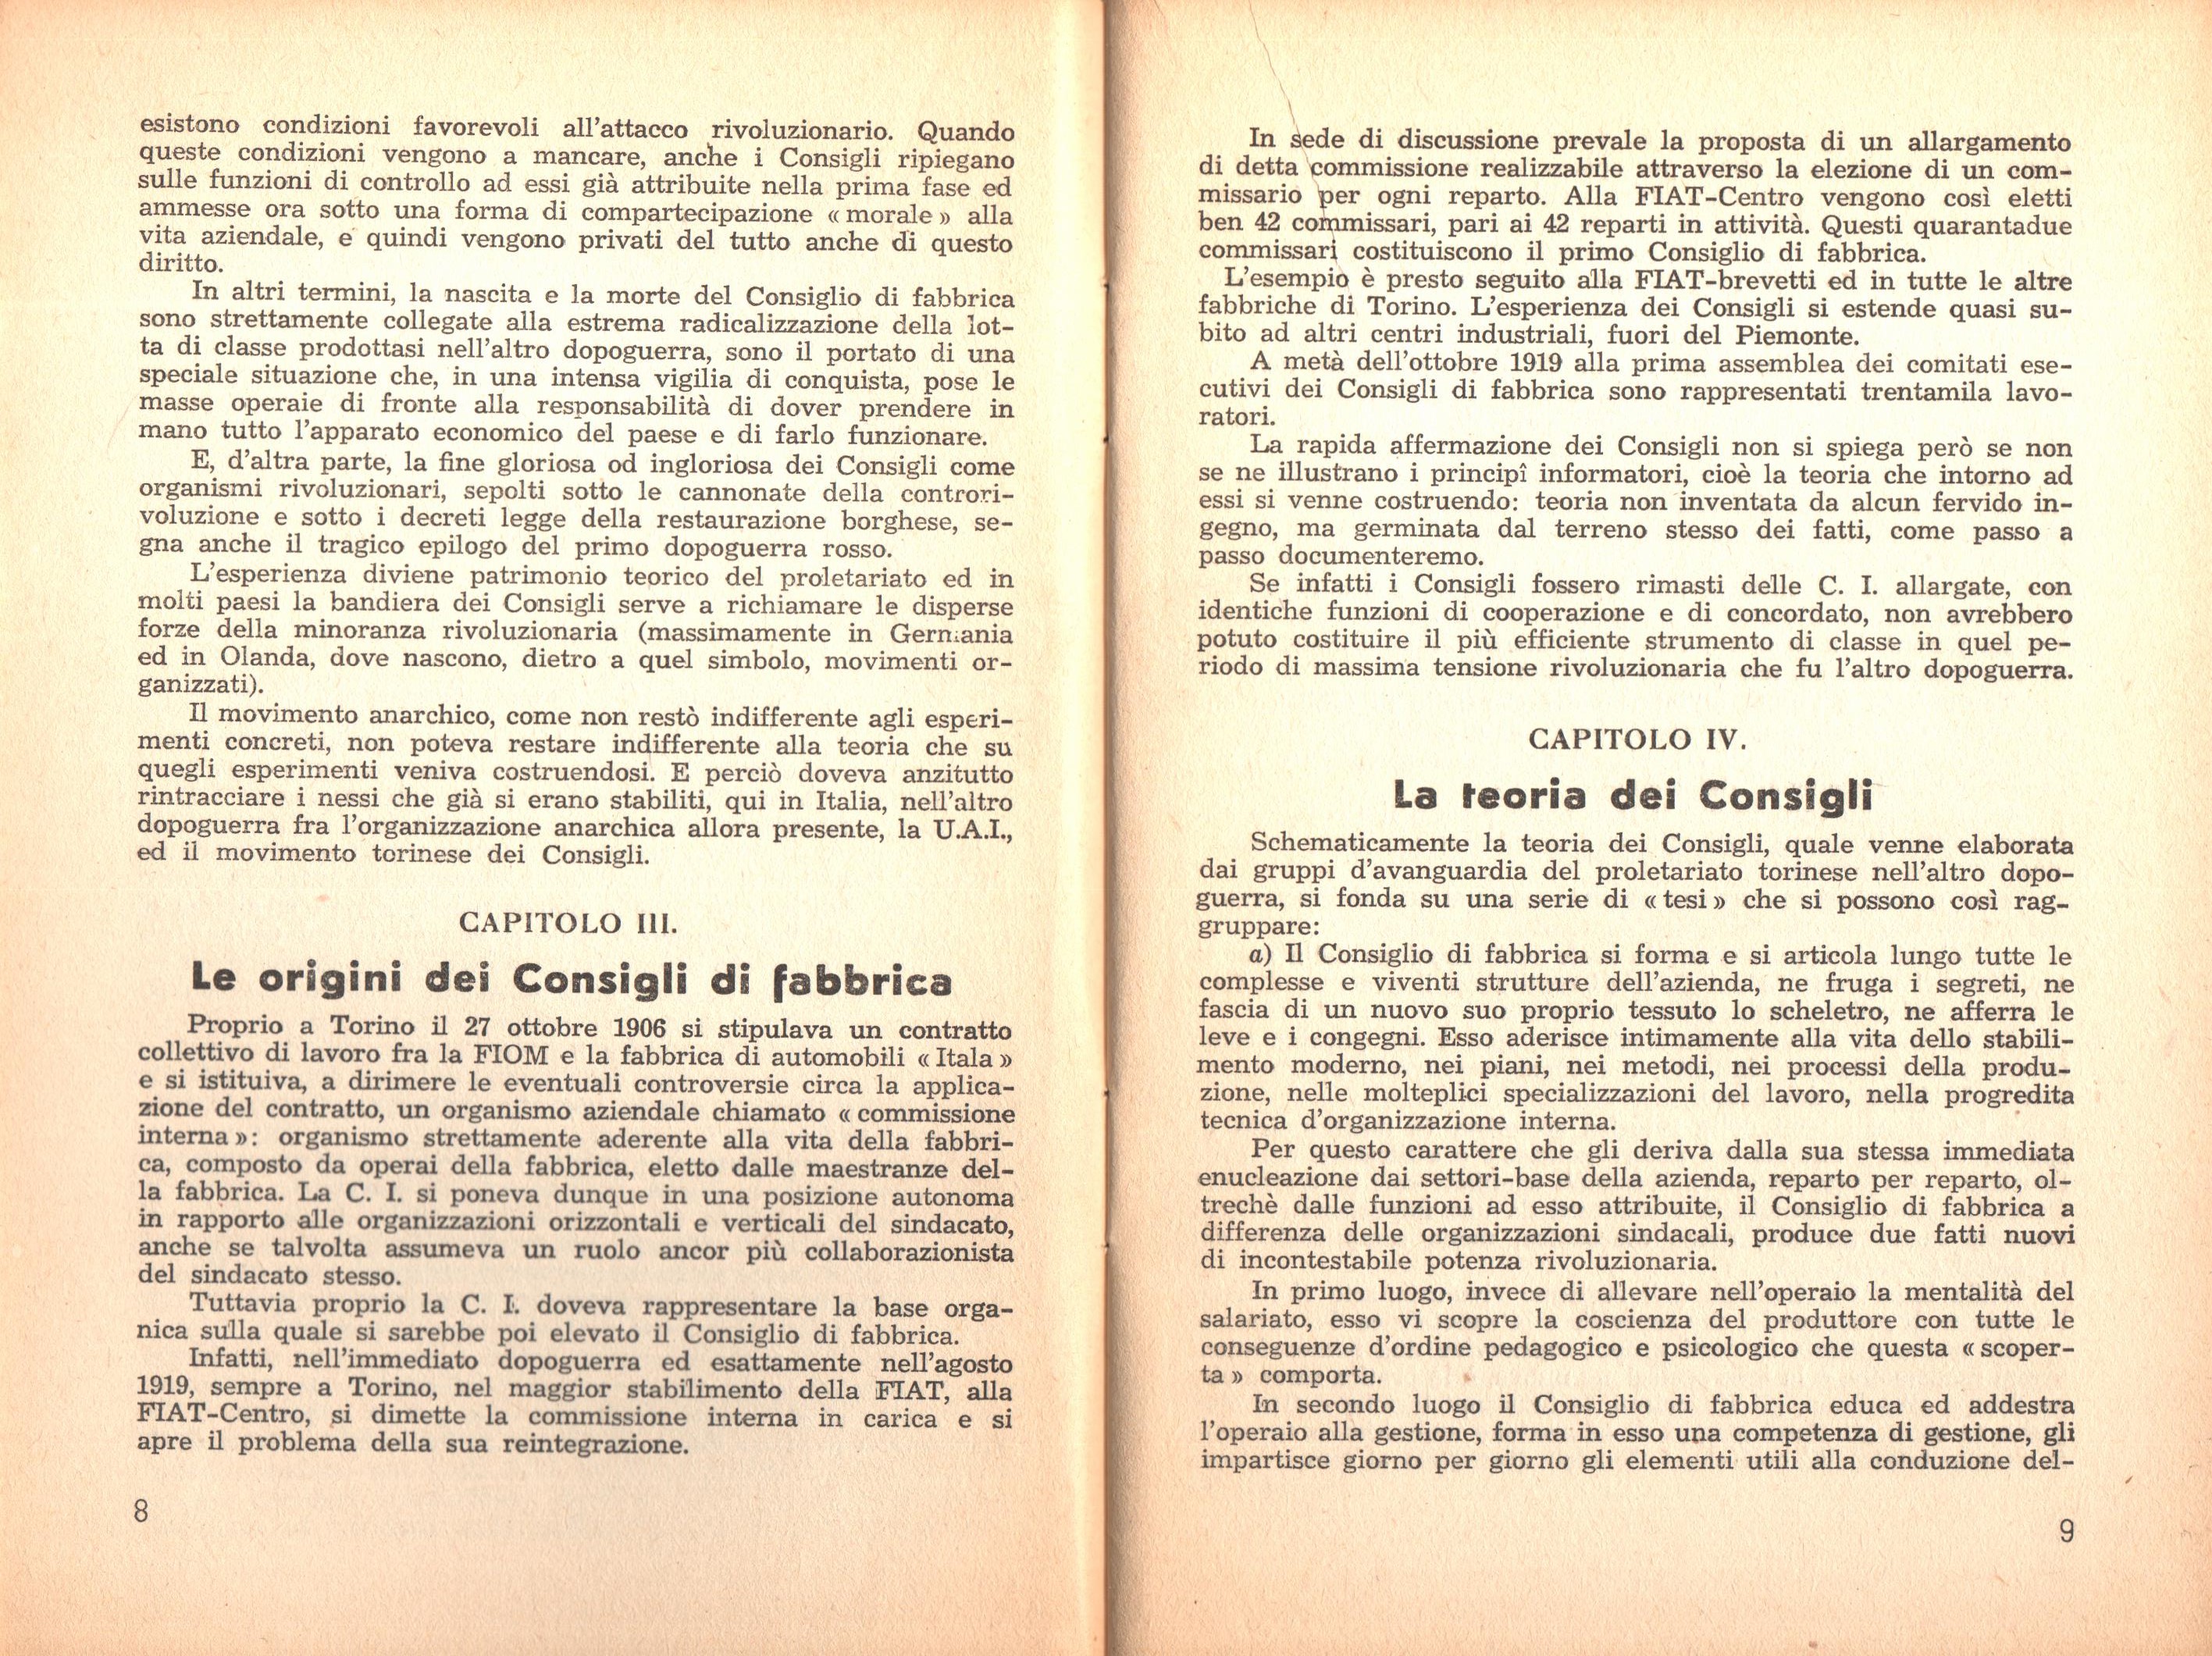 P. C. Masini, Anarchici e comunisti nel movimento dei Consigli a Torino - pag. 6 